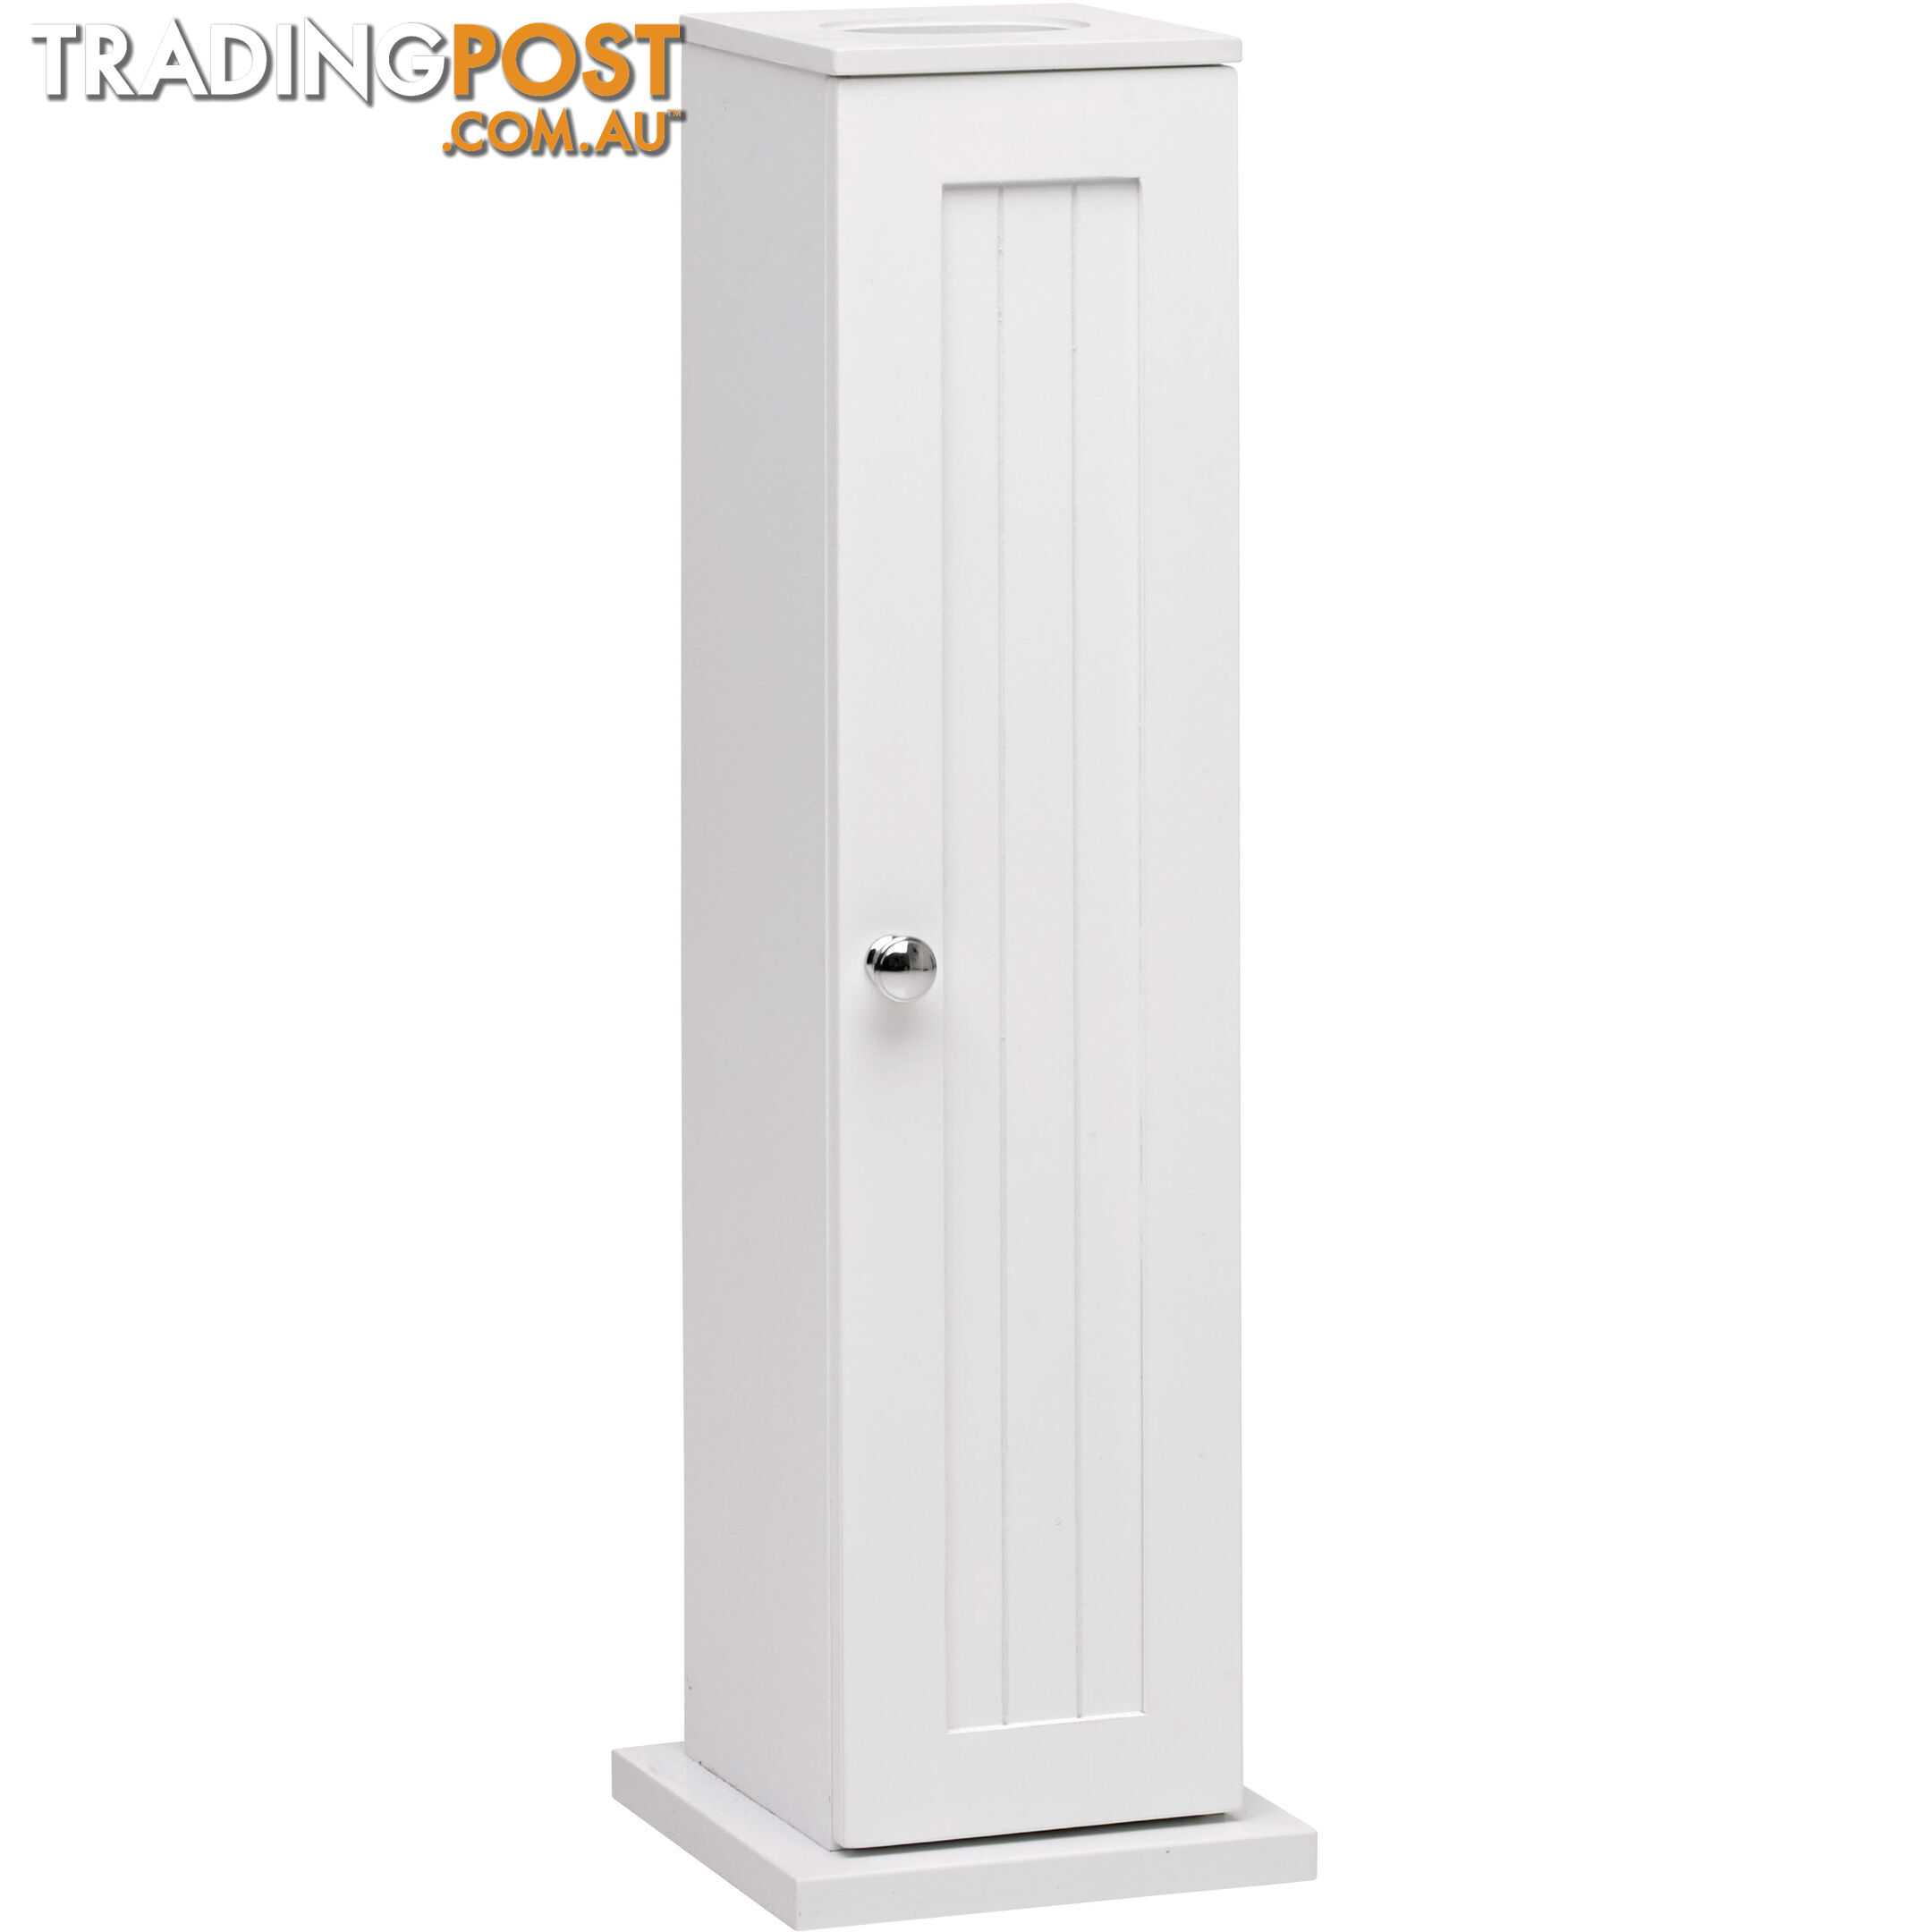 Grace Toilet Roll Cupboard in WHITE